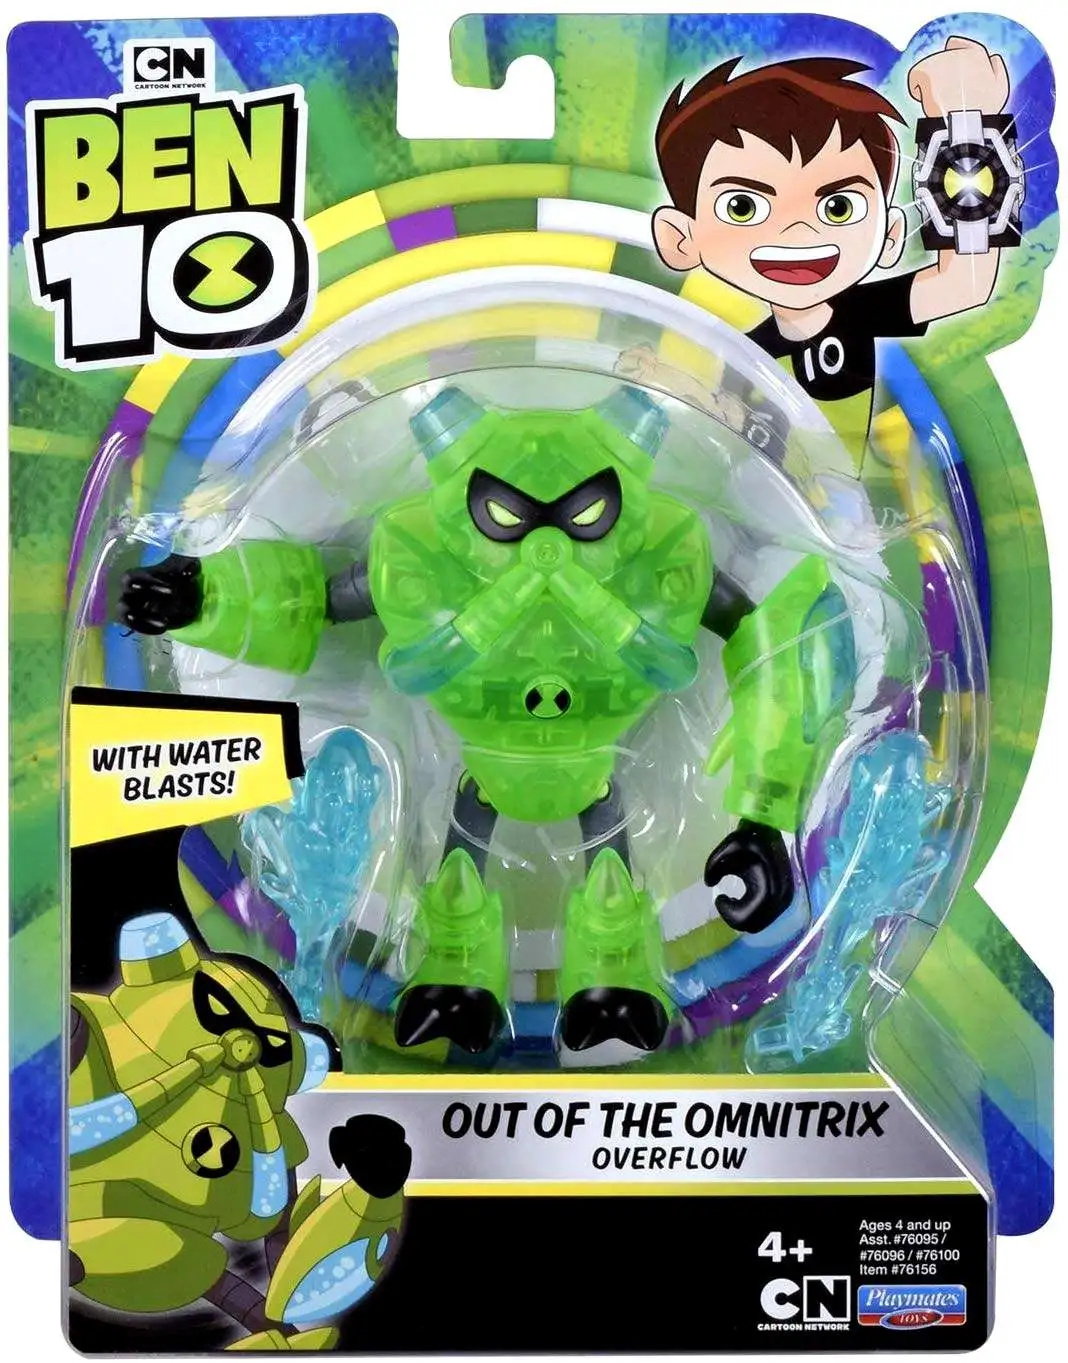 BEN 10 - OVERFLOW - Original Series (My Version) by That-Omnitrix